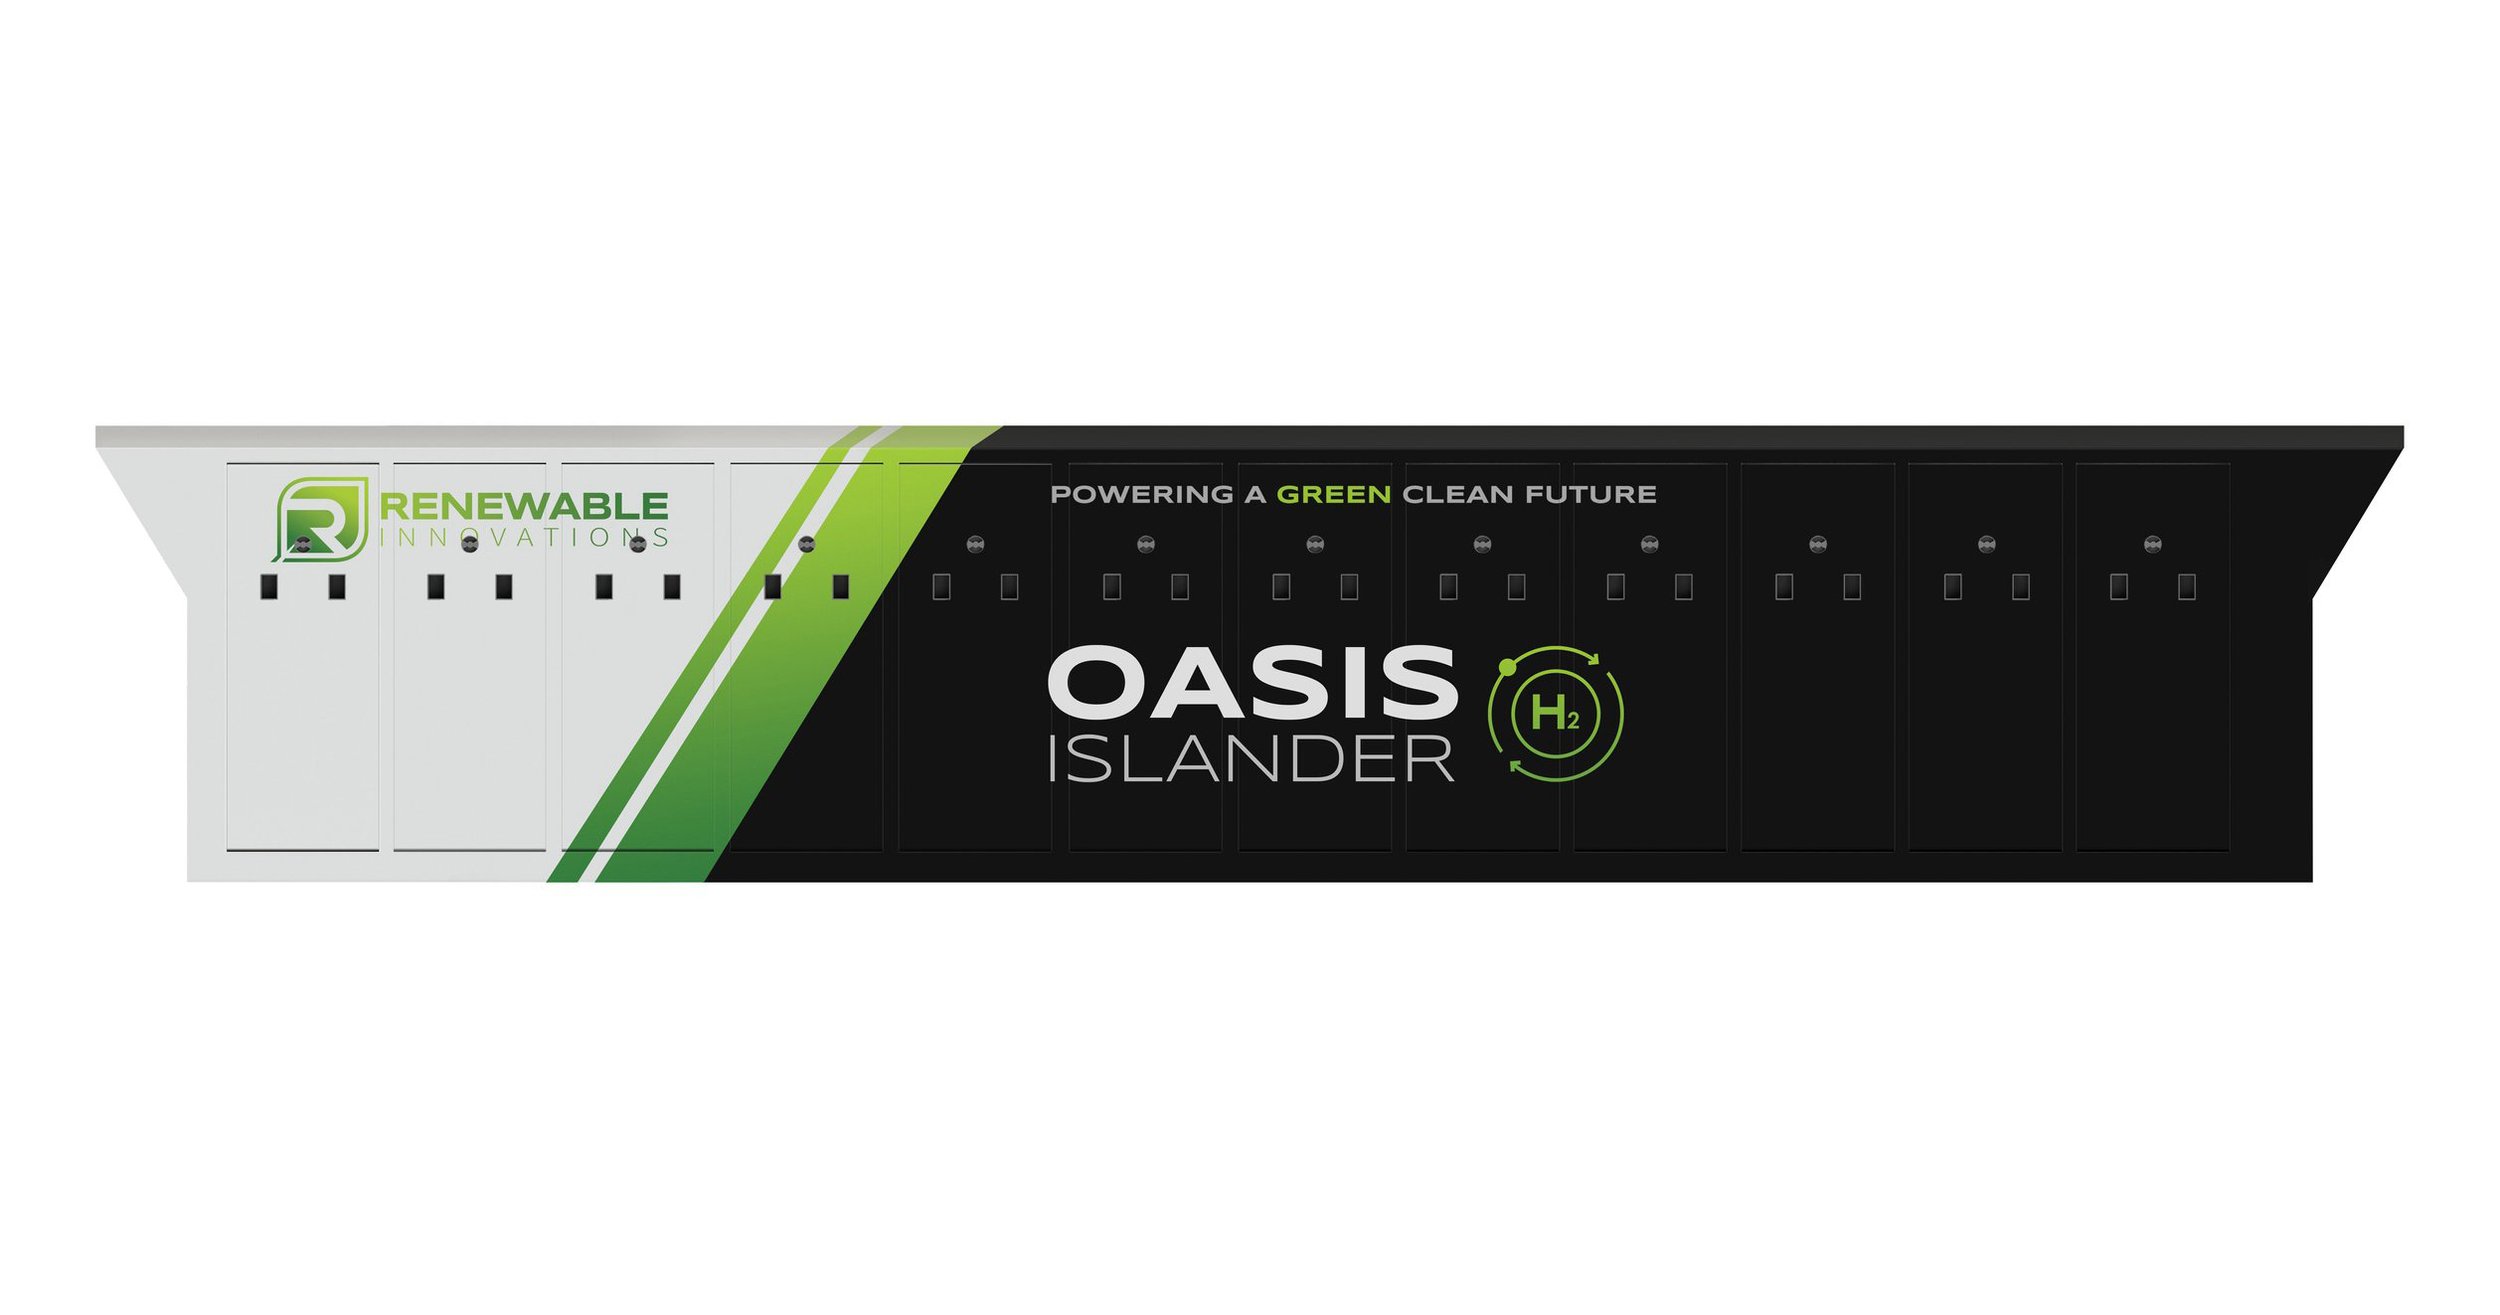 Oasis Islander High Power Enabler (Copy)